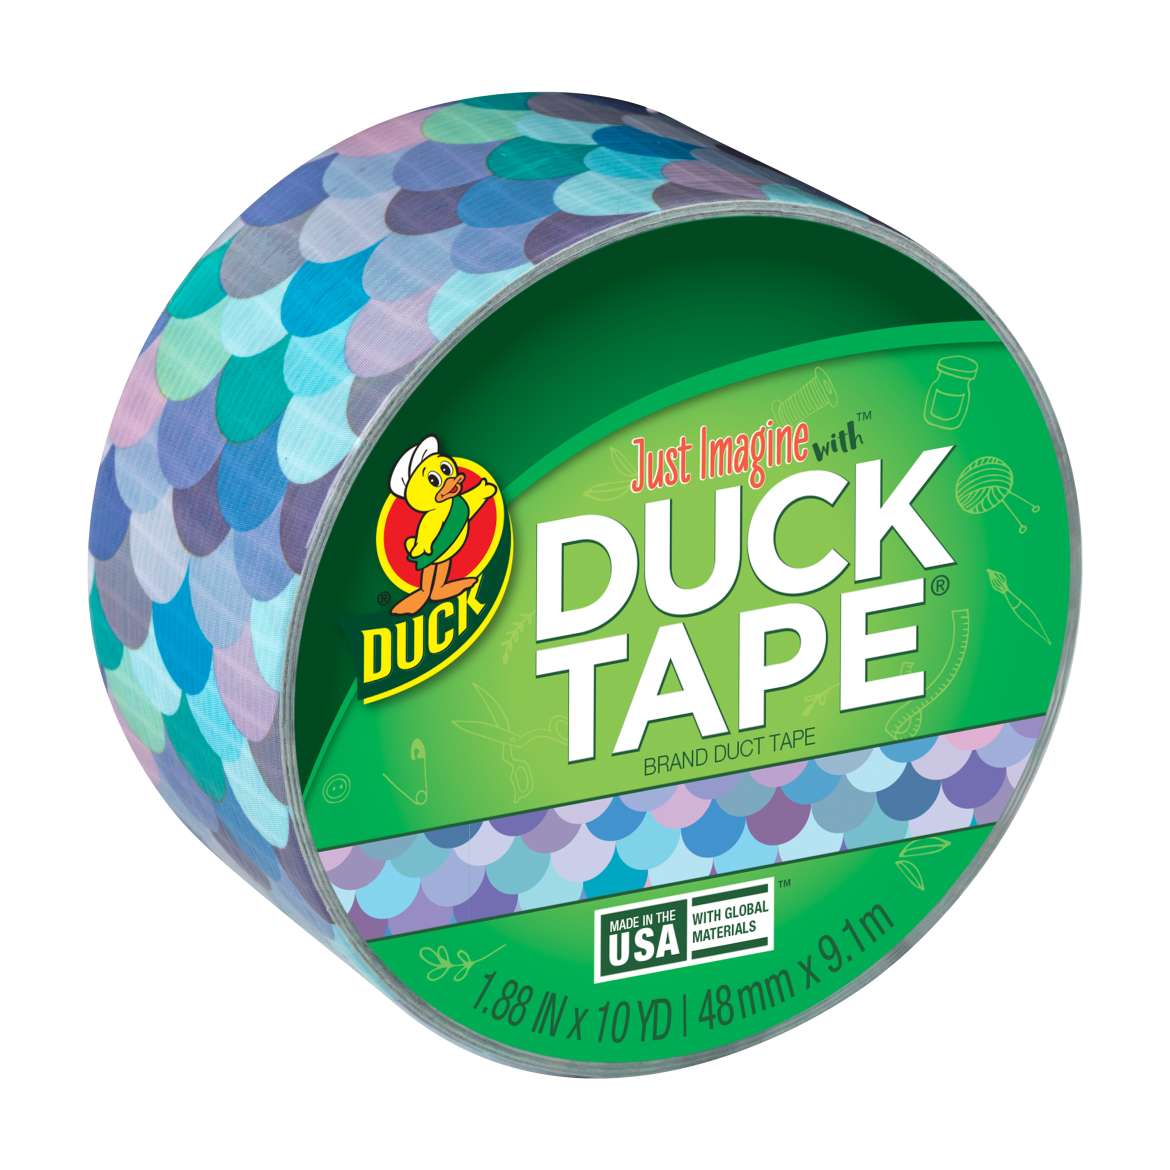 Printed Duck Tape® Brand Duct Tape - Mermaid, 1.88 in. x 10 yd.